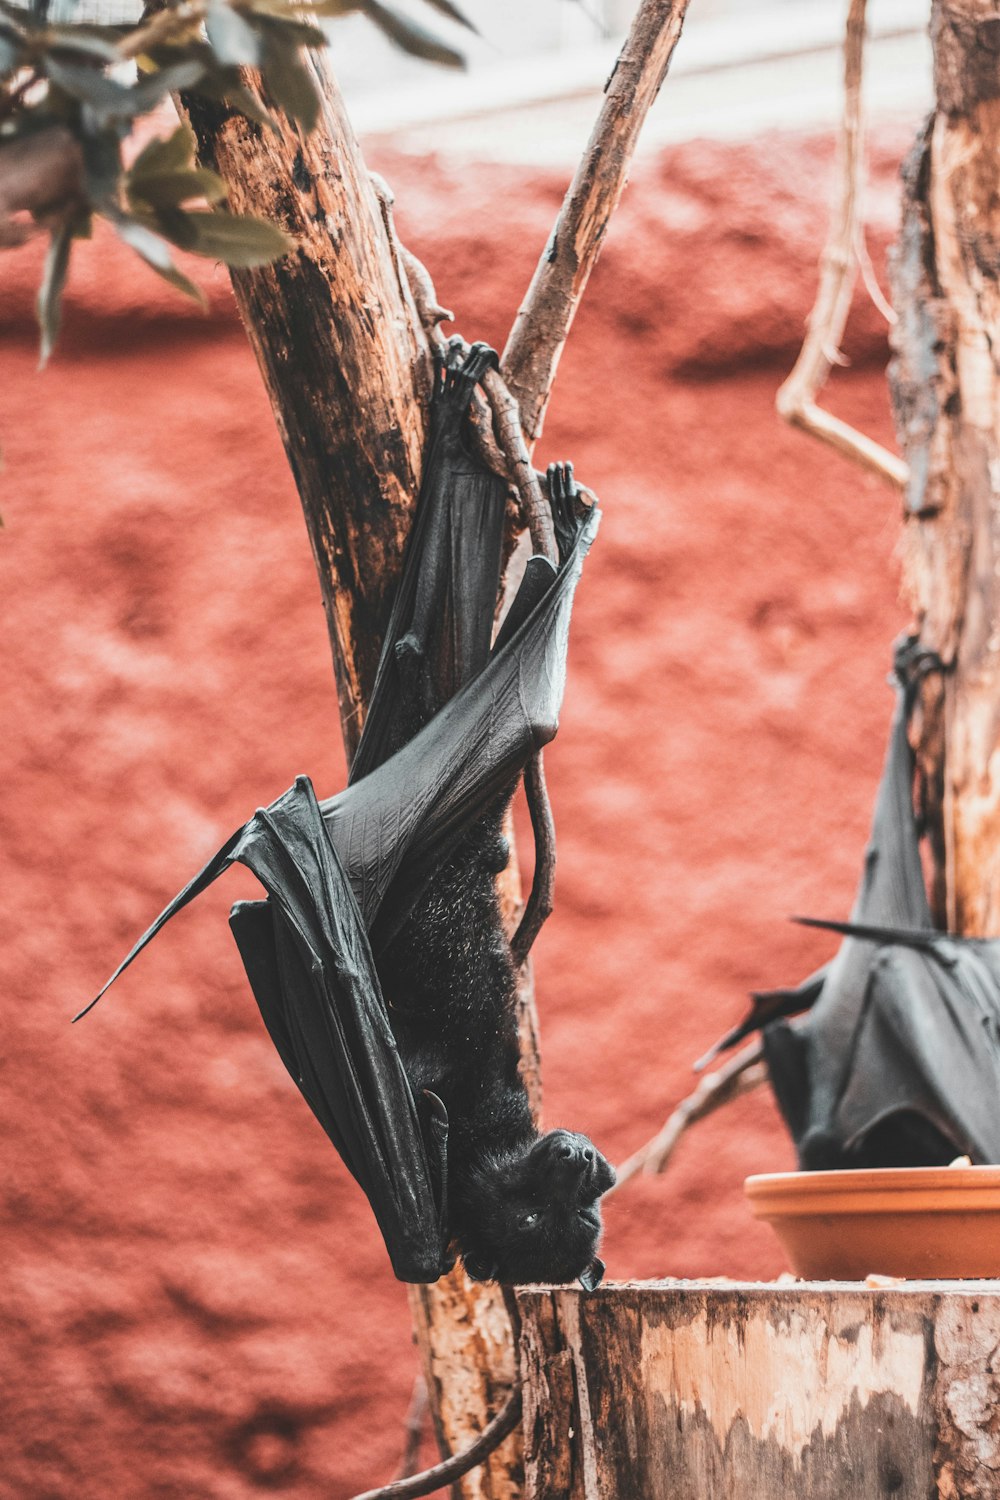 bat on tree